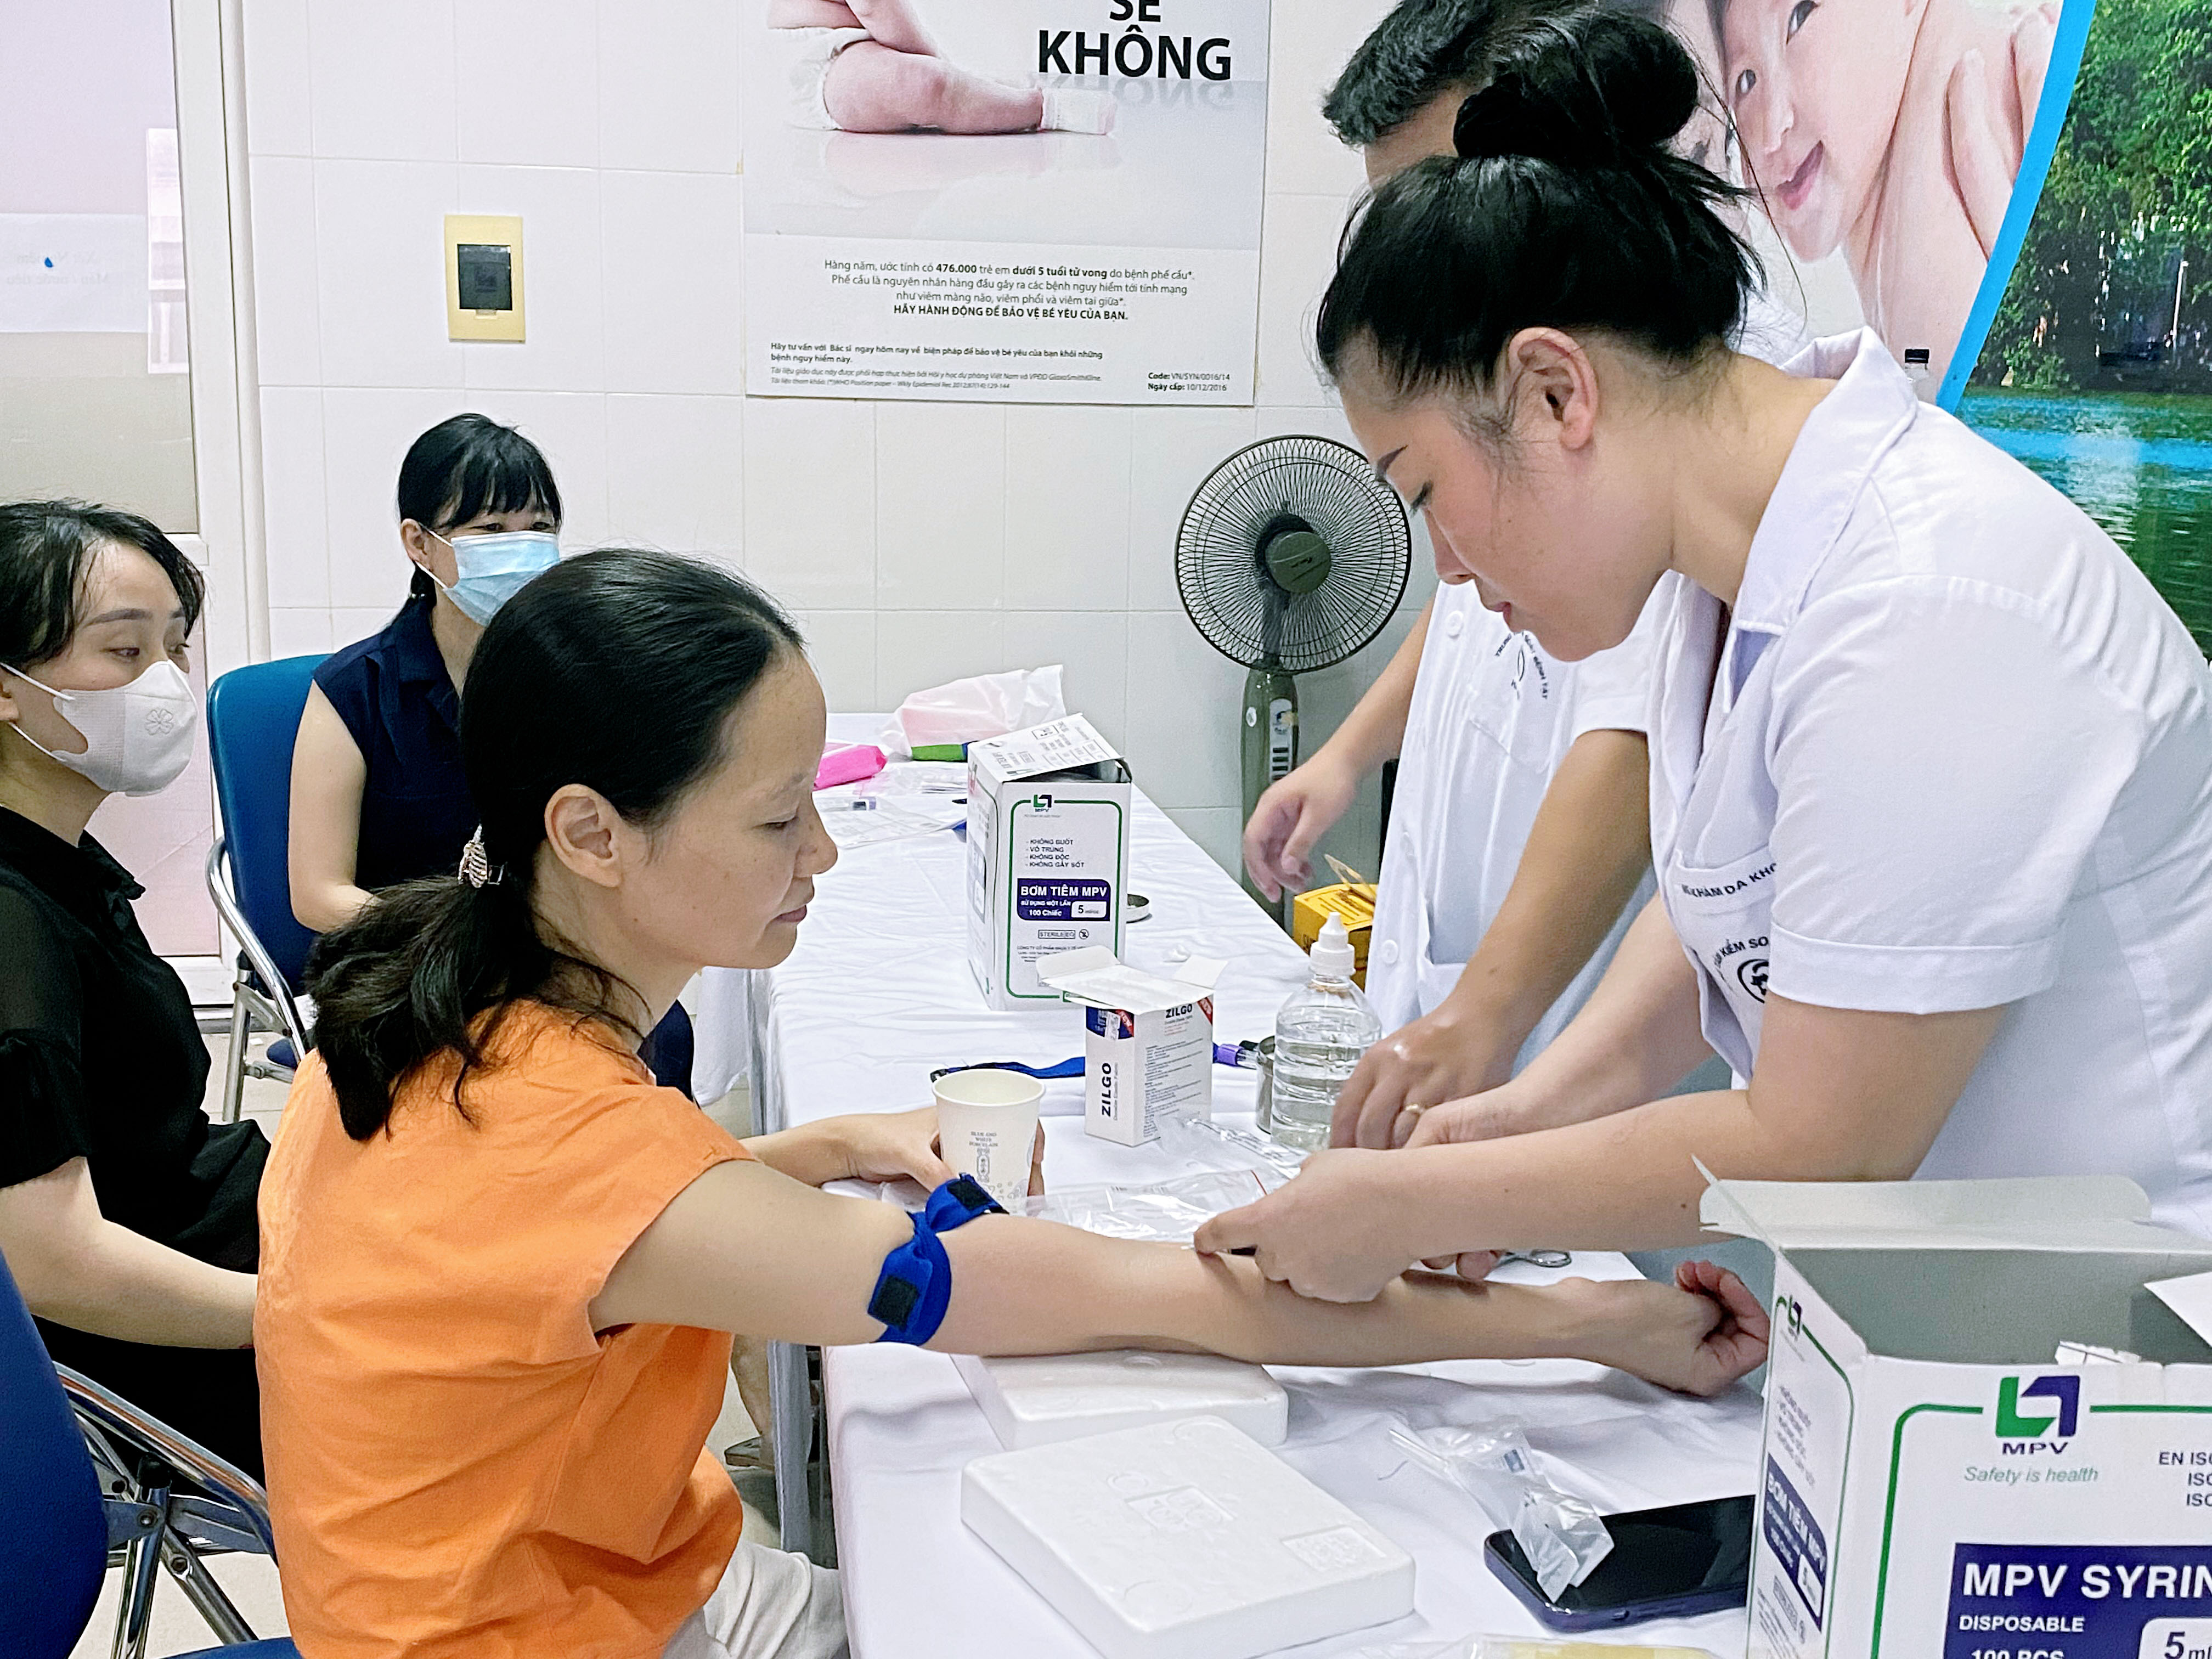 Trung tâm Kiểm soát bệnh tật Hà Nội luôn quan tâm chăm lo sức khỏe người lao động